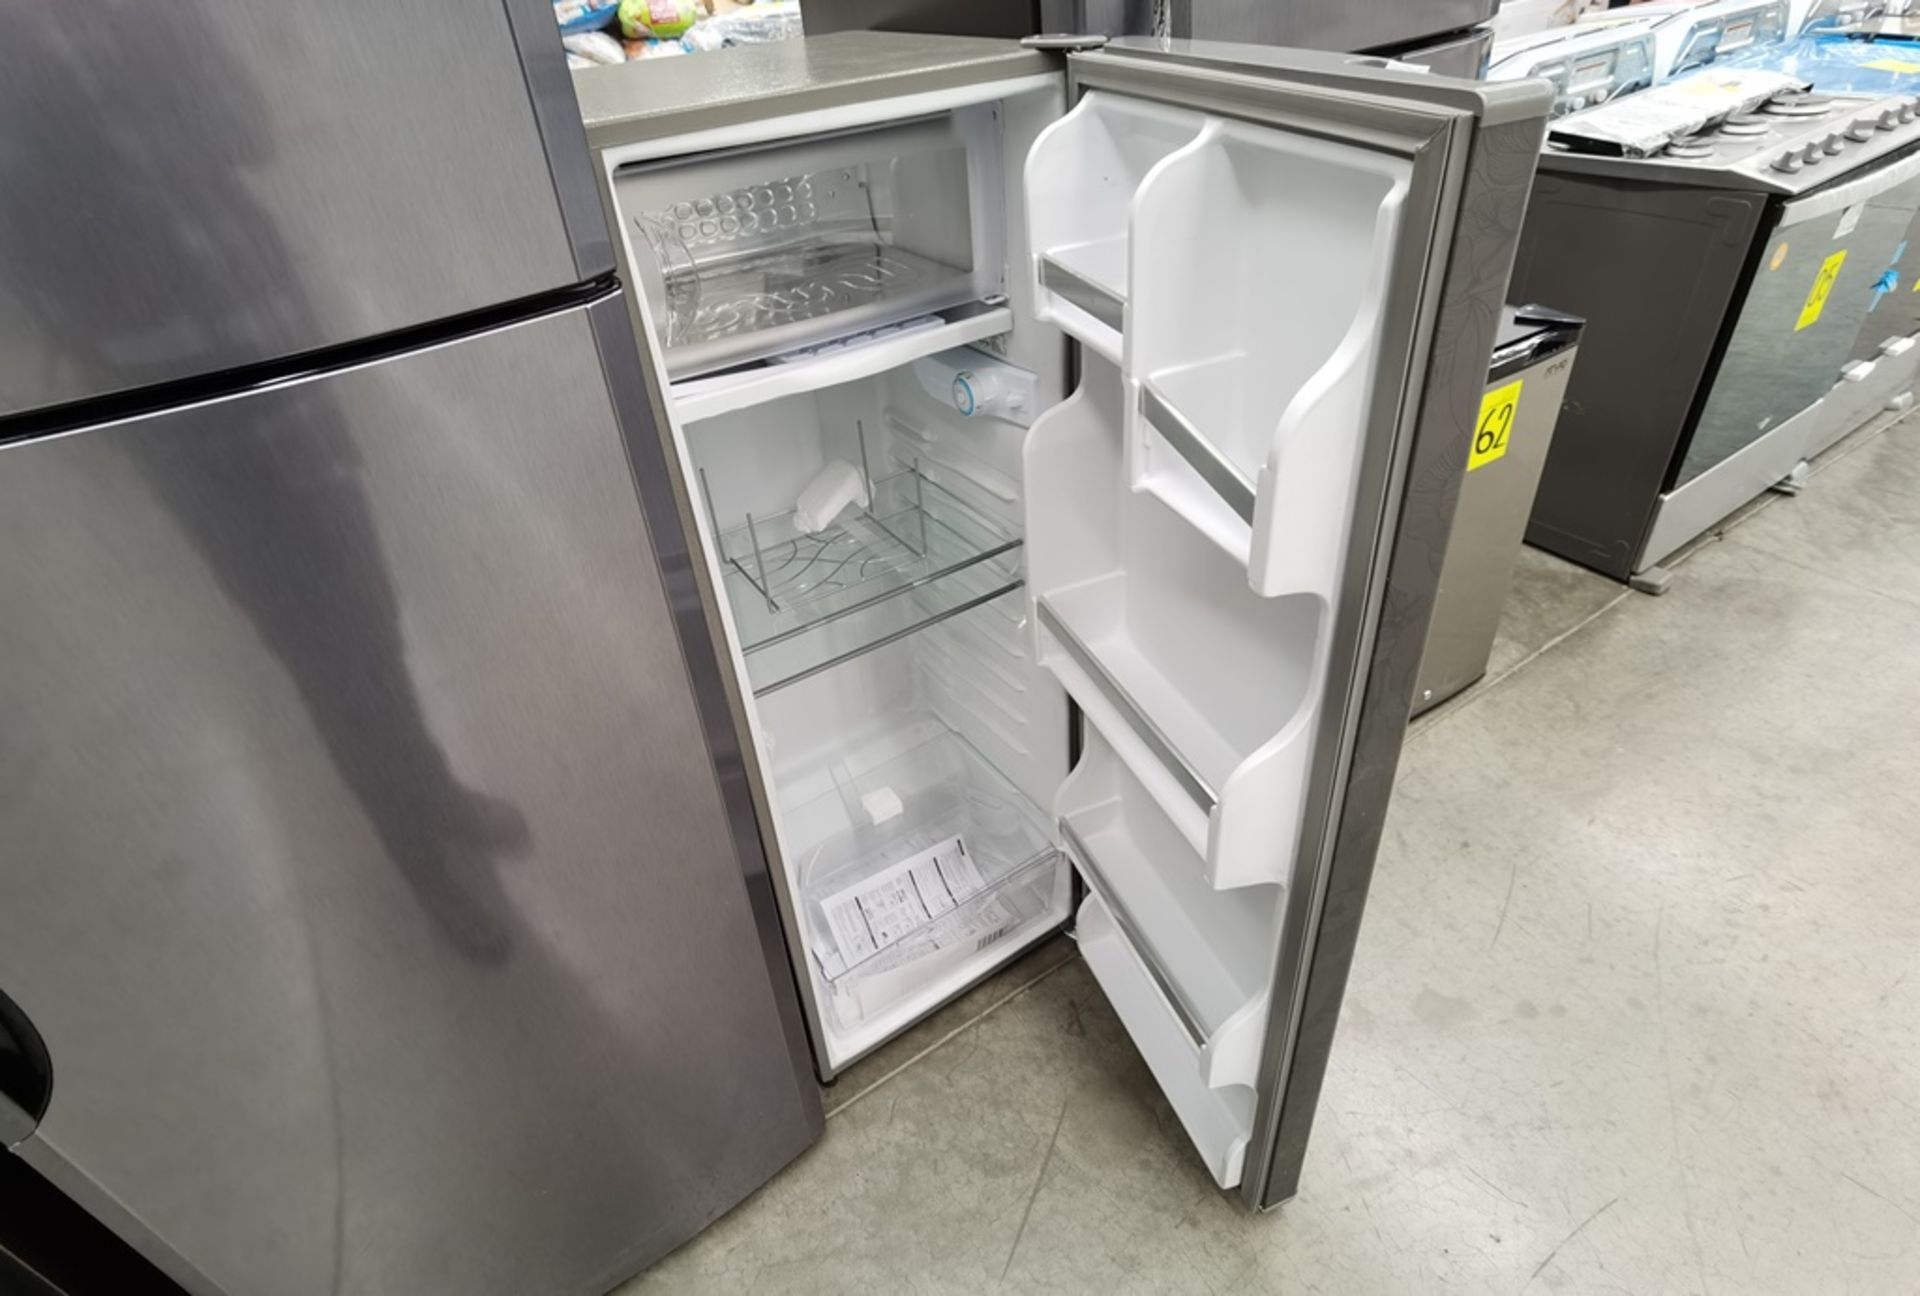 Lote de 2 refrigeradores conformado por: 1 Refrigerador maca Mabe Modelo RMS400IX, No de serie 2204 - Image 12 of 14